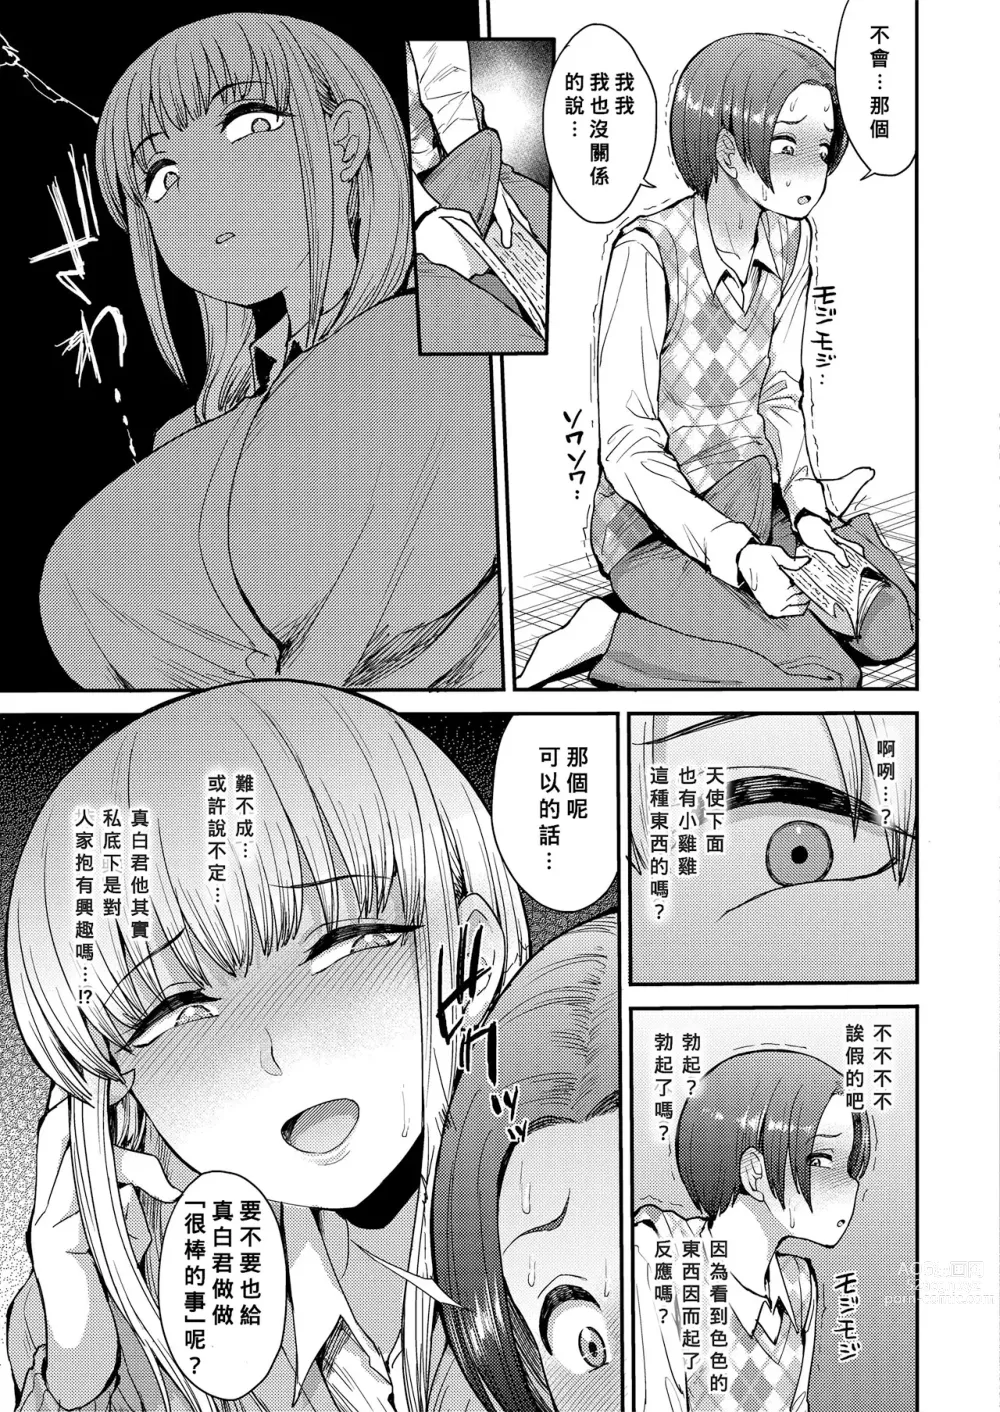 Page 7 of manga こっちむいてよ